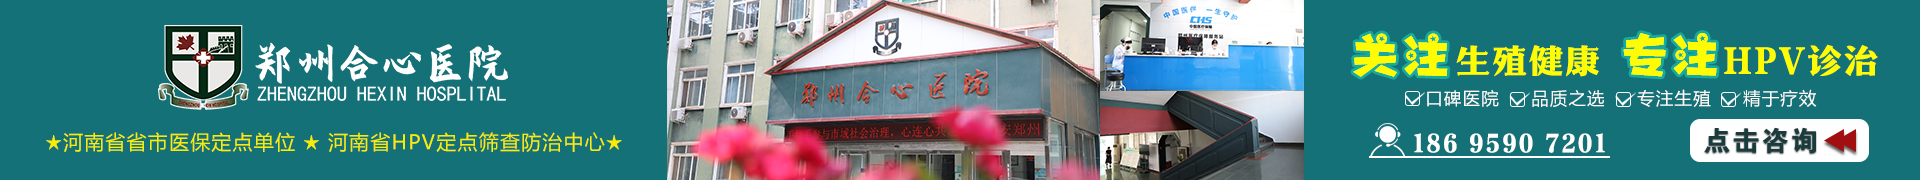 郑州性病医院